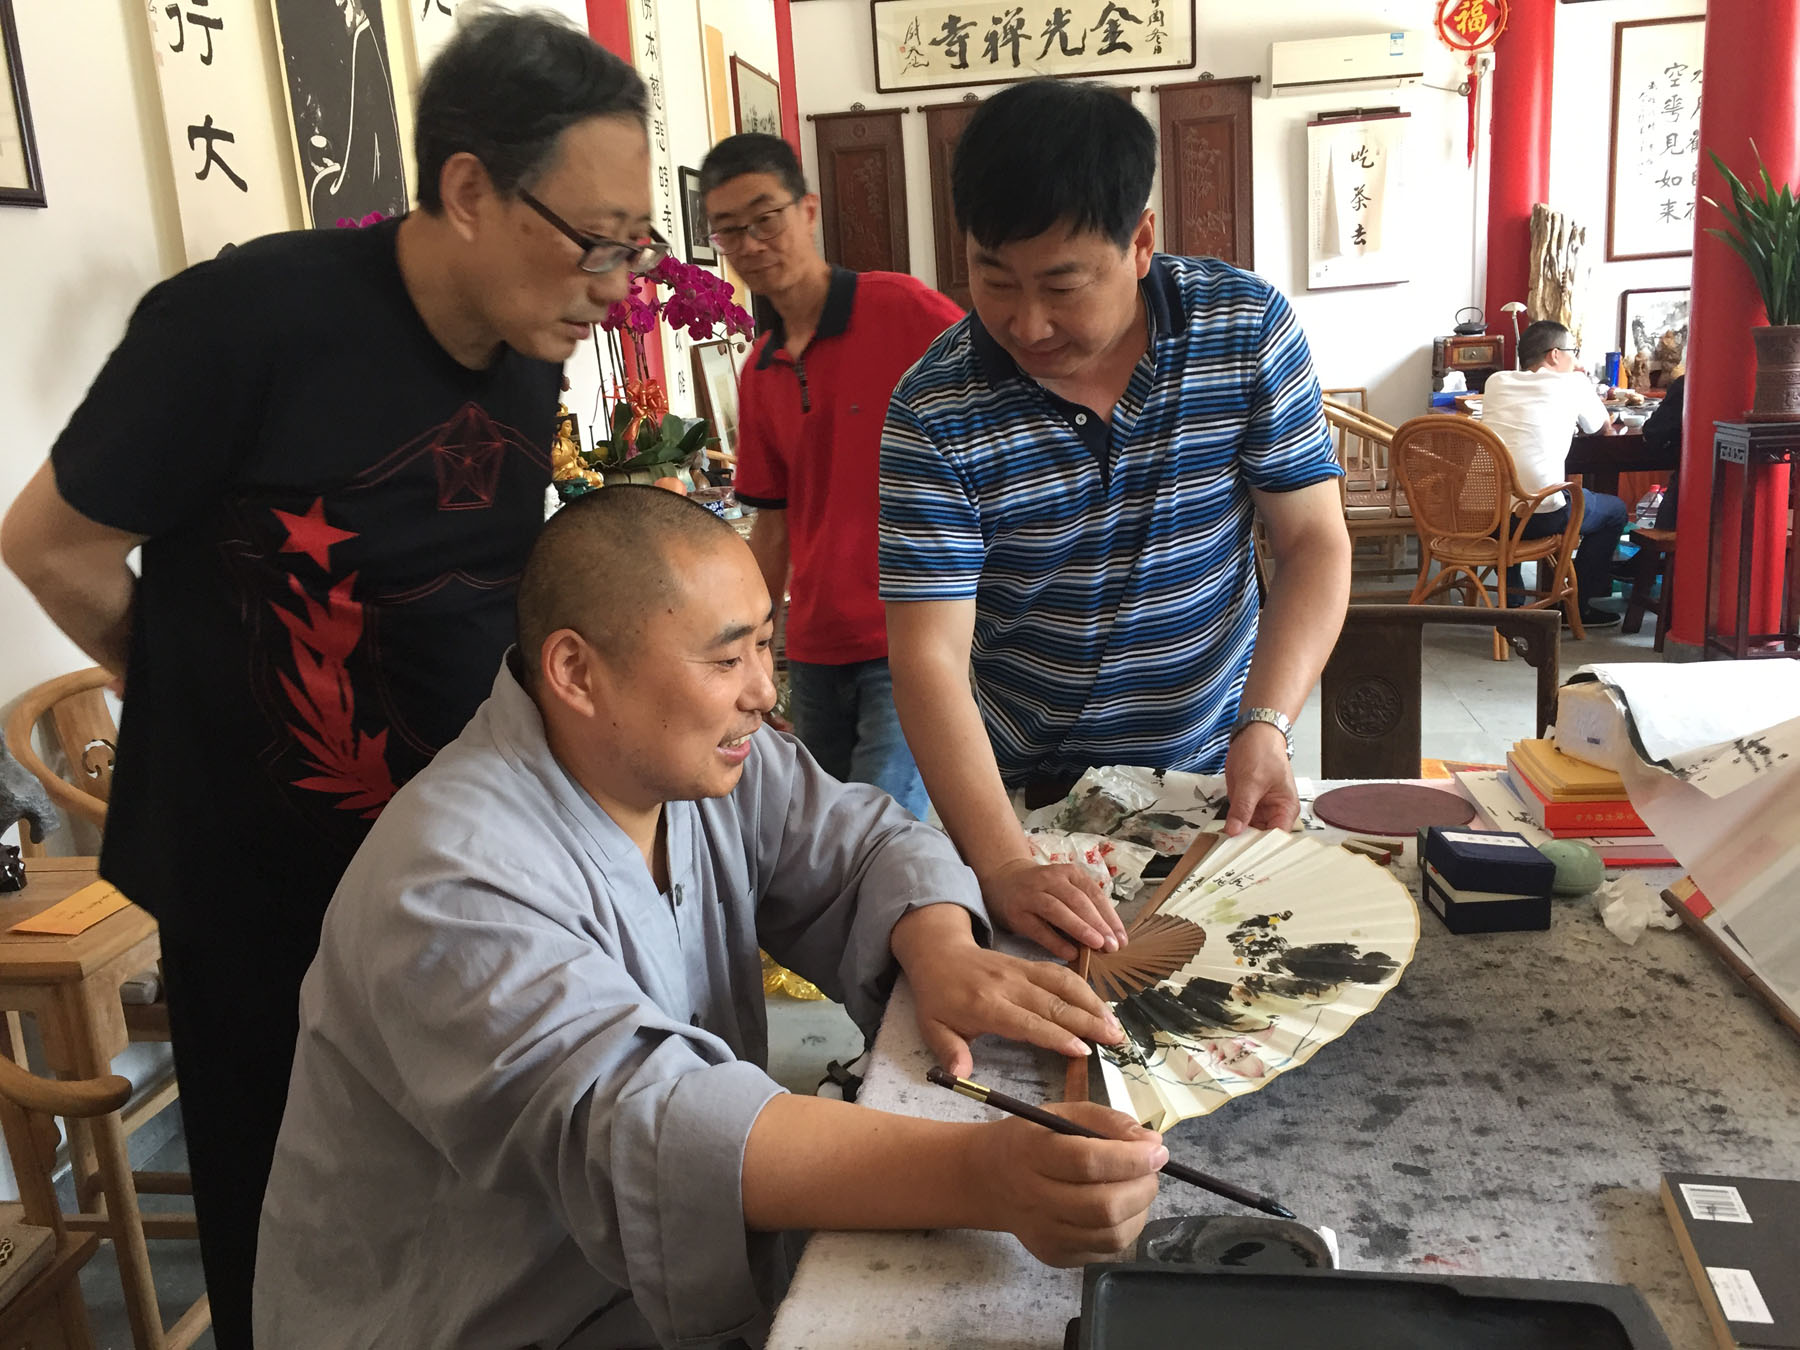 2019年6月18日赴六合金光禅寺交流书画，上图为禅寺主持道生与书画家们在般若堂交流创作体会